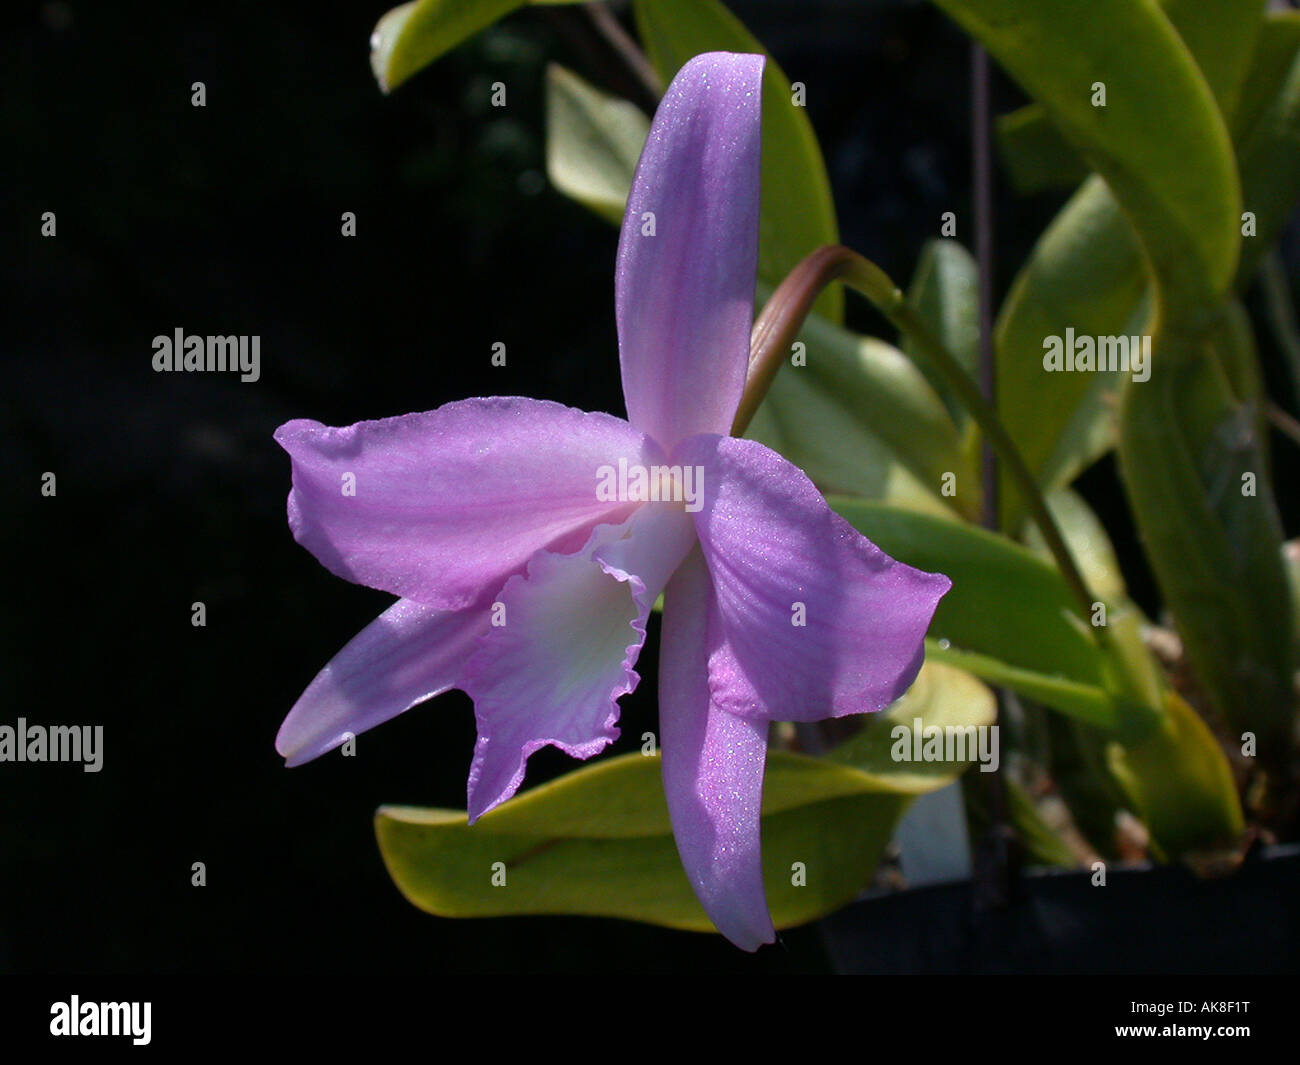 Laelia (Laelia fidelense), flower Stock Photo